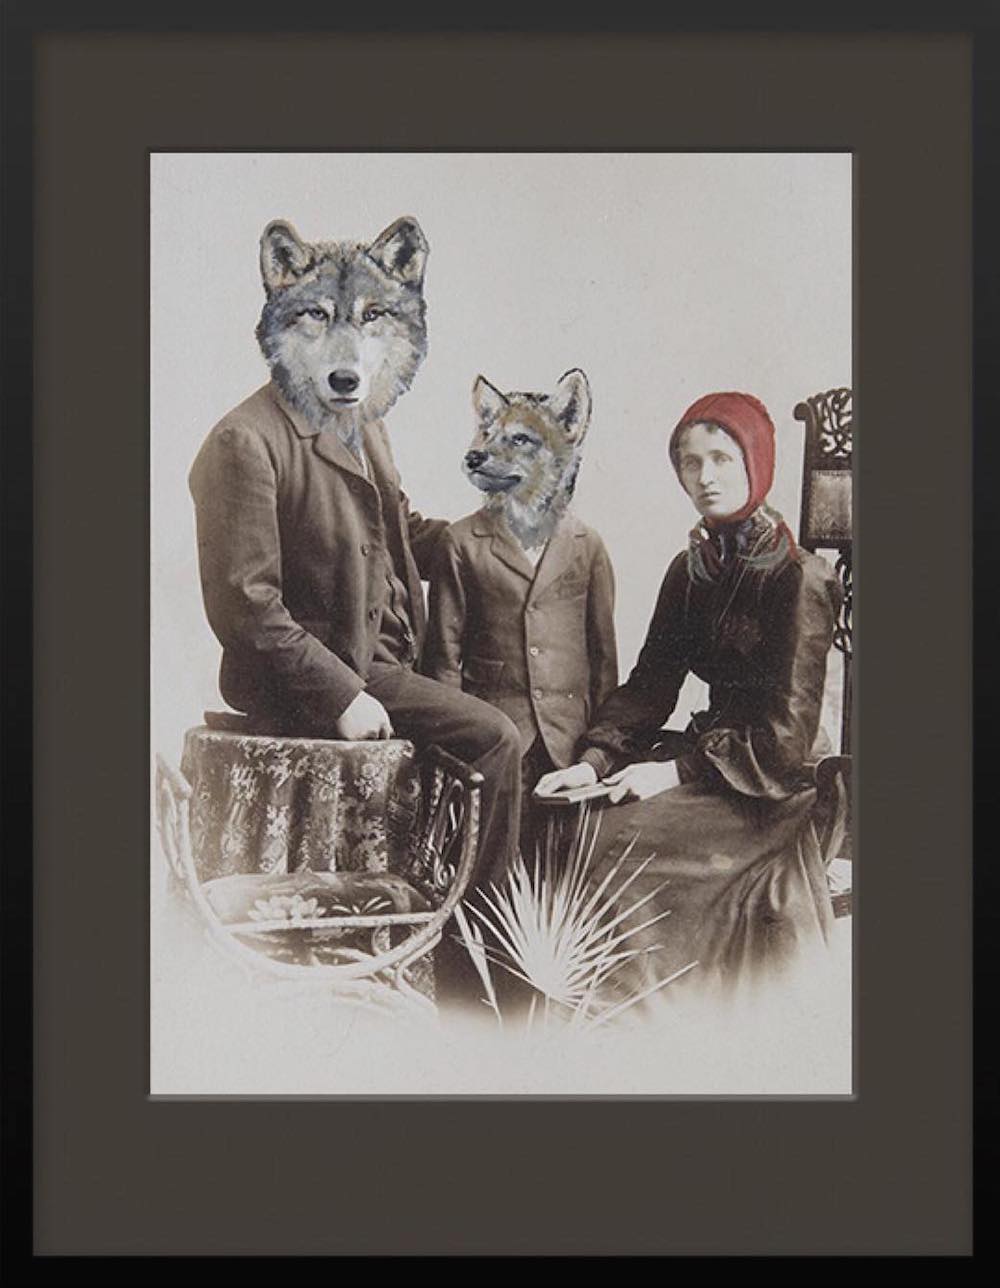 Аня Вюльфинг: сюрреалистические портреты людей с живописными интеграциями животных